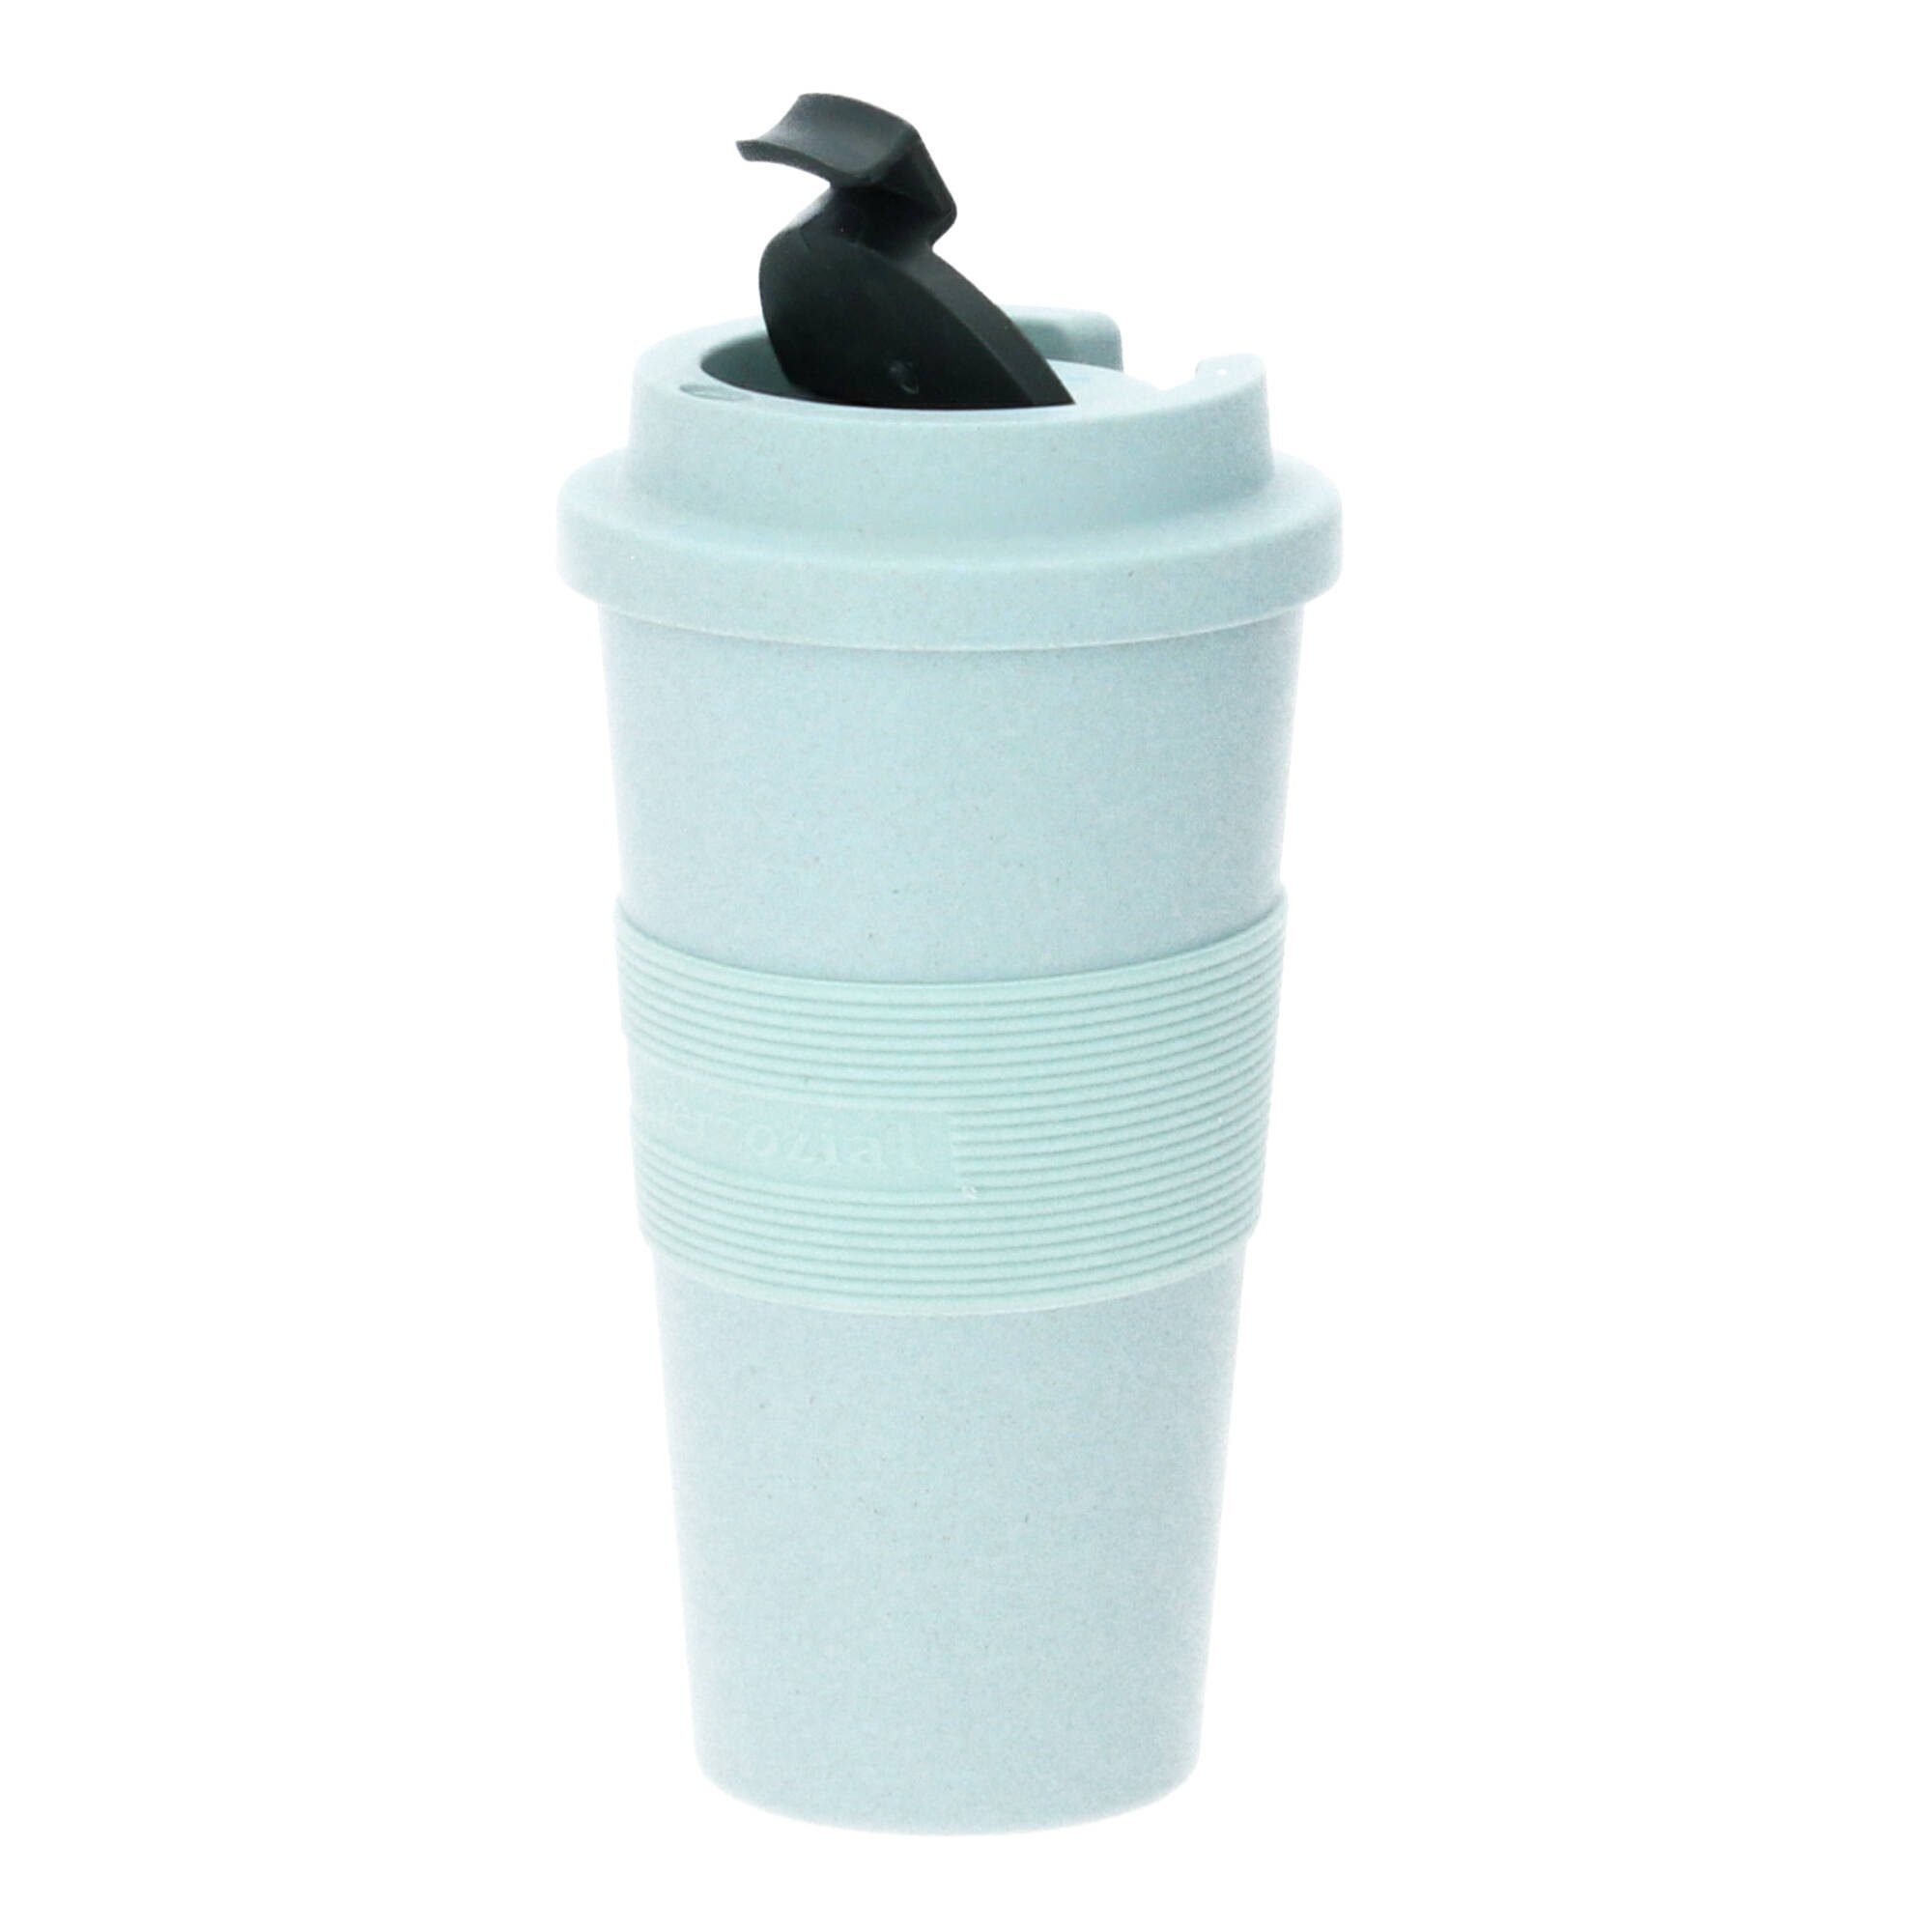 (Kunststoff Kaffeebecher 480 aus Coffee-to-go-Becher puderblau, Timeout large PLA ml Pflanzenzucker)